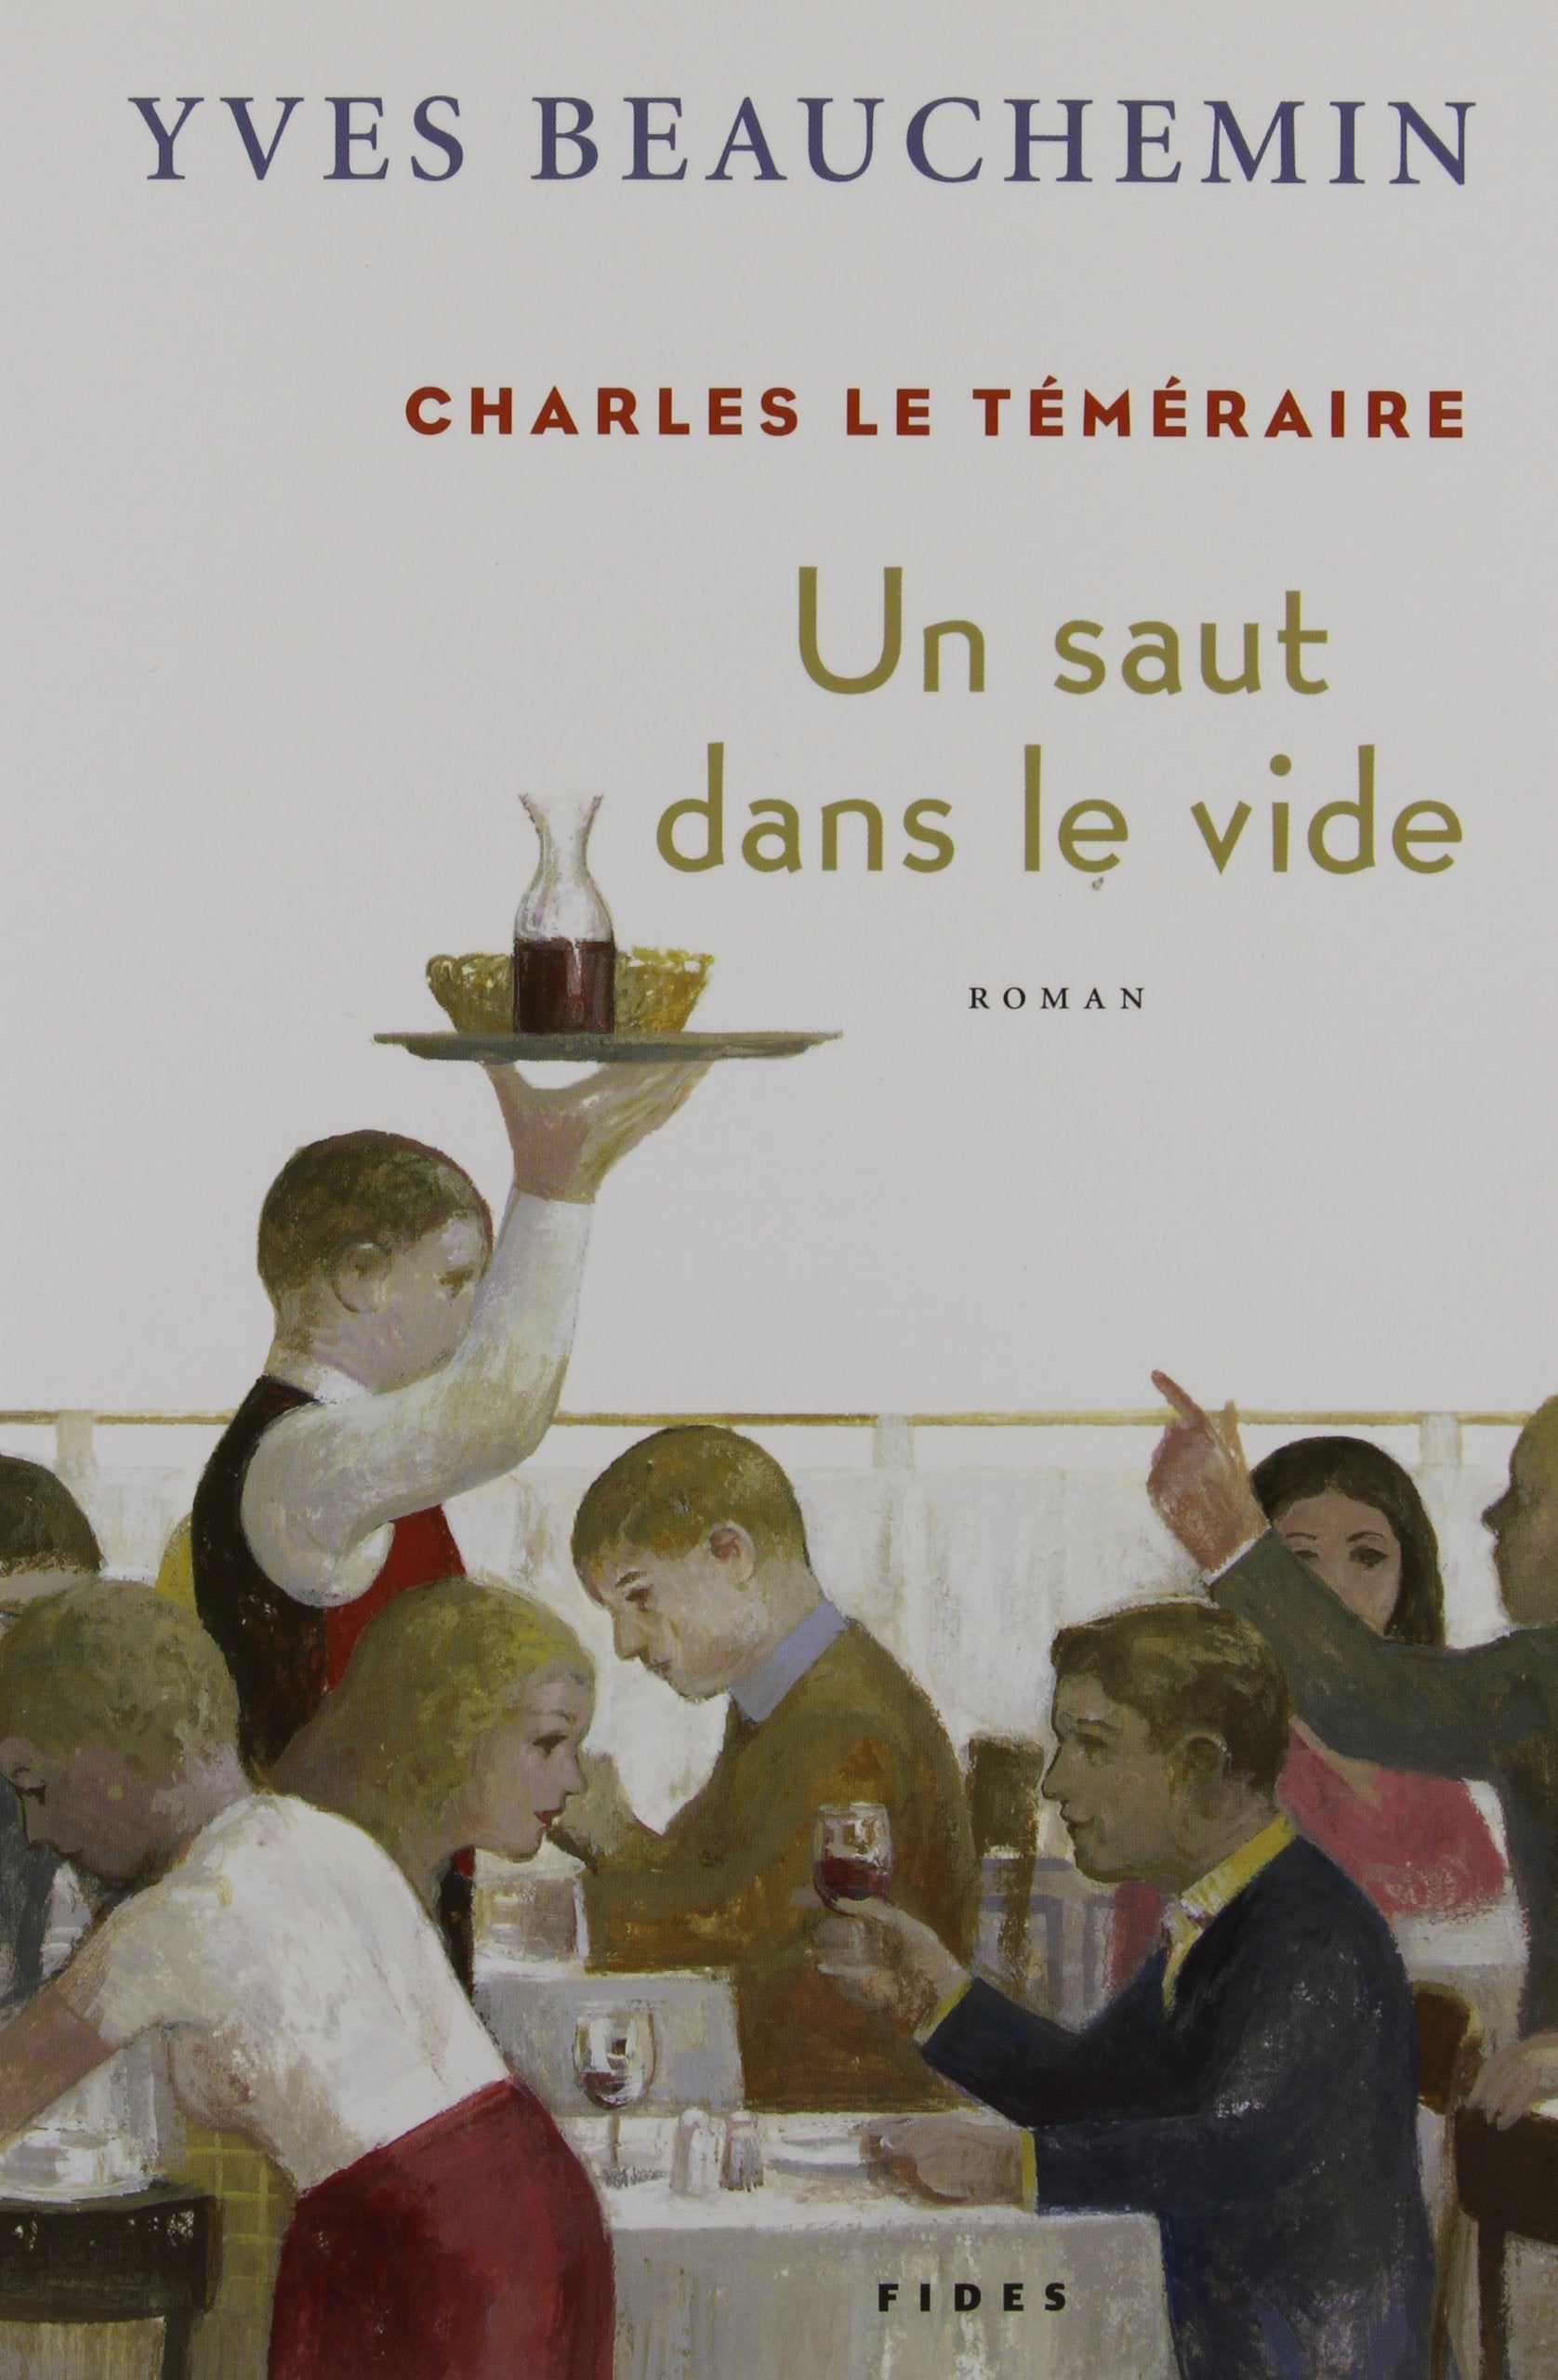 Livre ISBN 2762126452 Charles le téméraire # 2 : Un saut dans le vide (Yves Beauchemin)